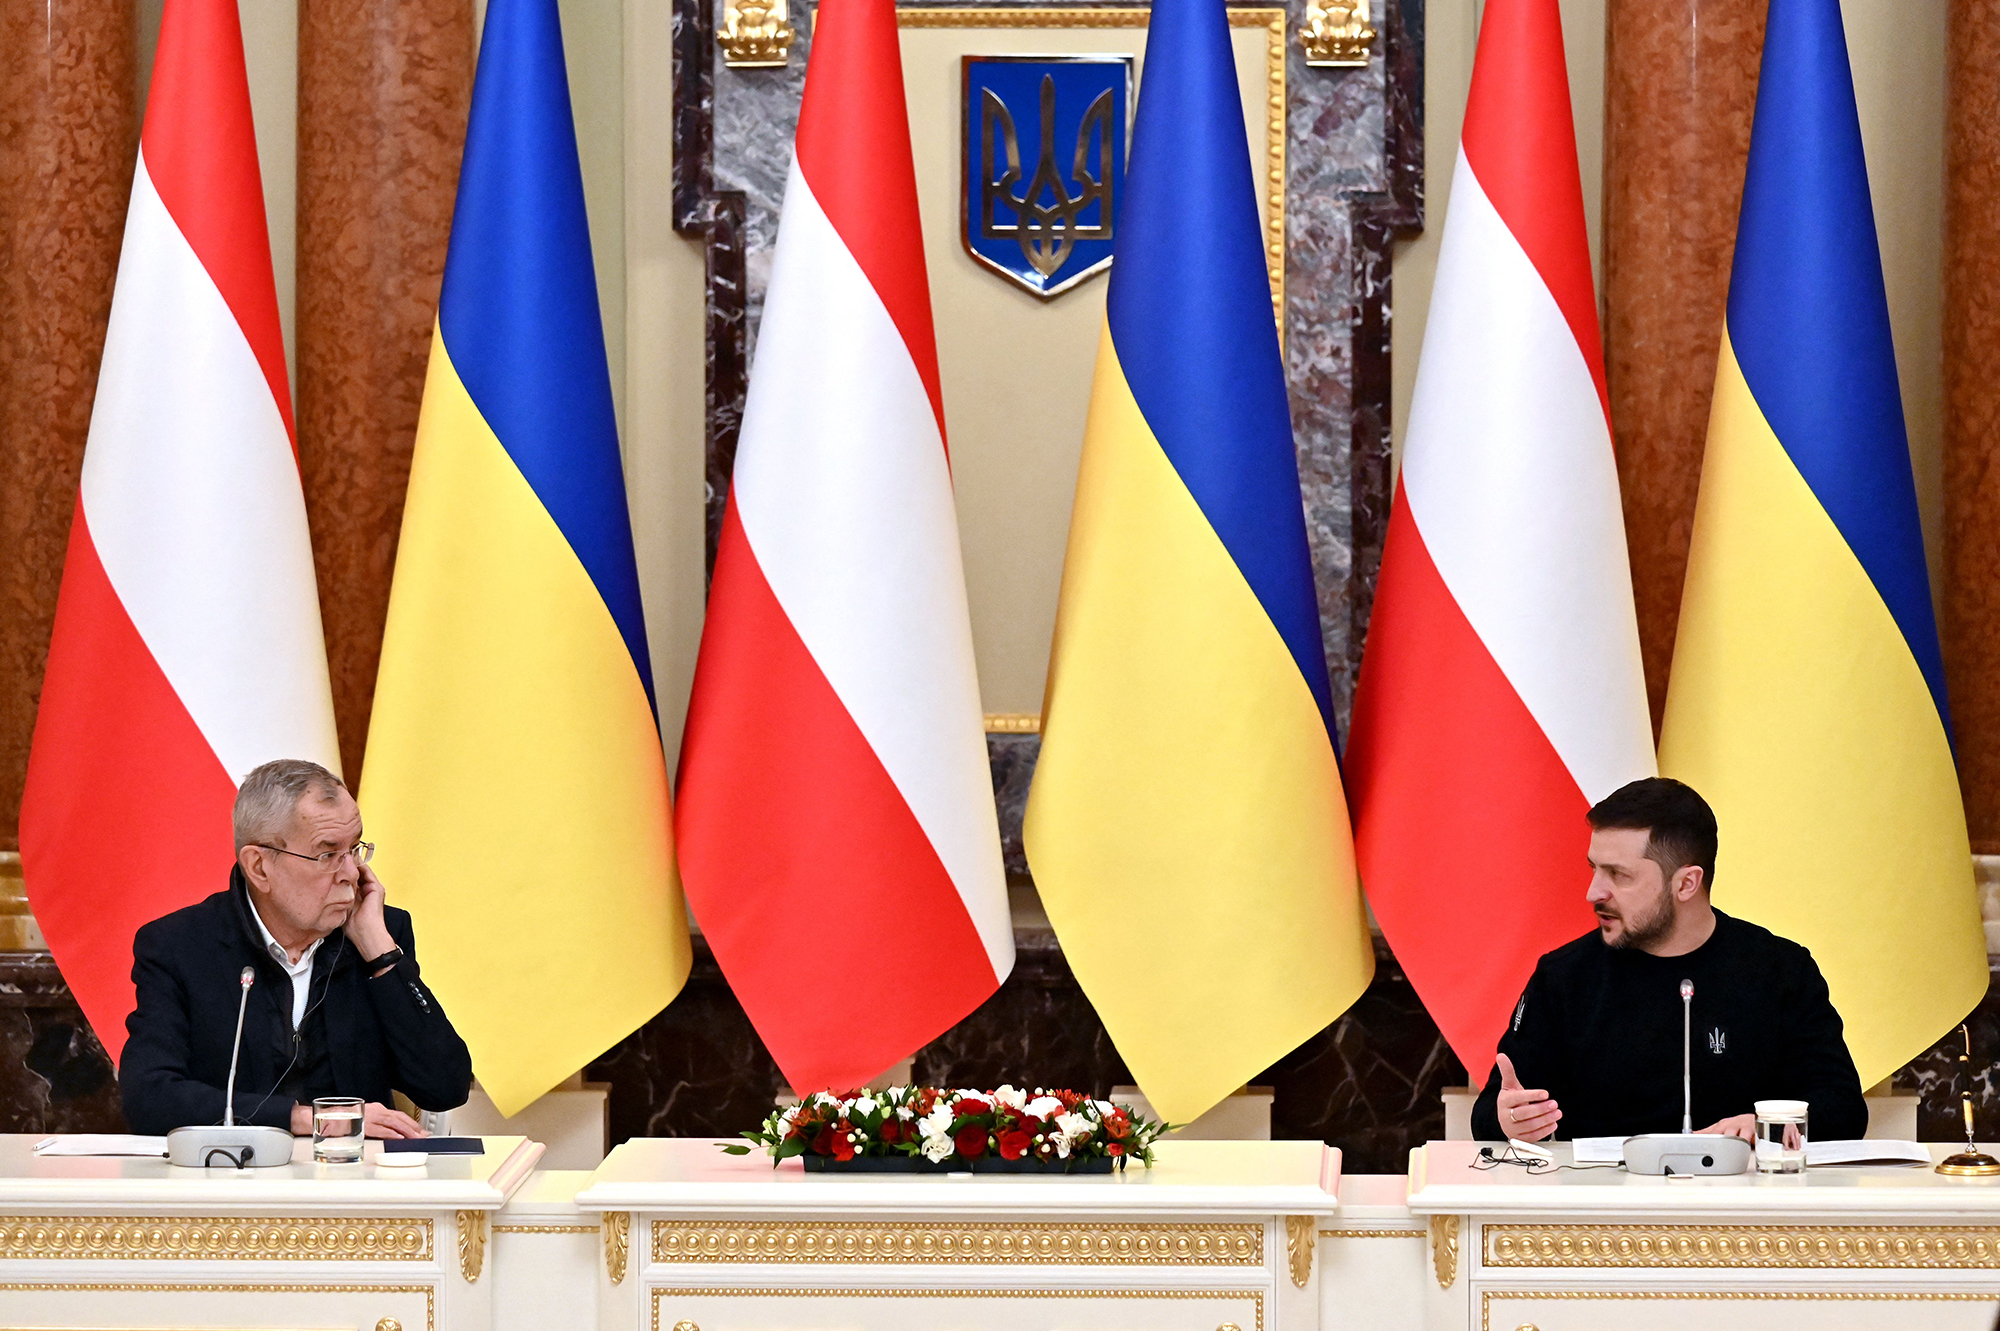 El presidente de Ucrania, Volodymyr Zelensky, a la derecha, y su homólogo de Austria, Alexander Van der Bellen, realizan una conferencia de prensa conjunta luego de sus conversaciones en Kyiv, Ucrania, el 1 de febrero. (Sergei Supinsky/AFP/Getty Images)